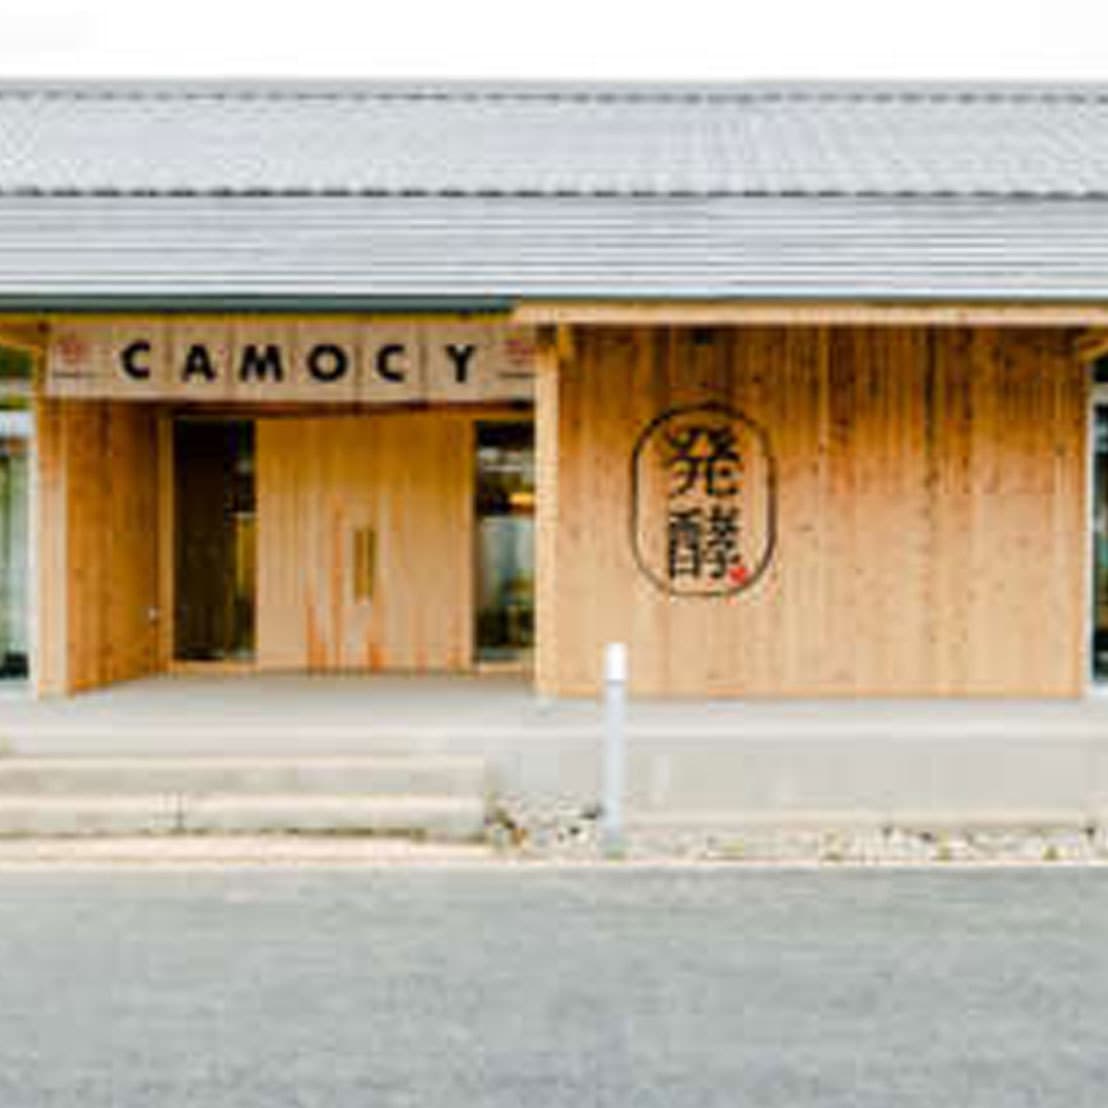 CAMOCY 陸前高田の発酵パーク「カモシー」